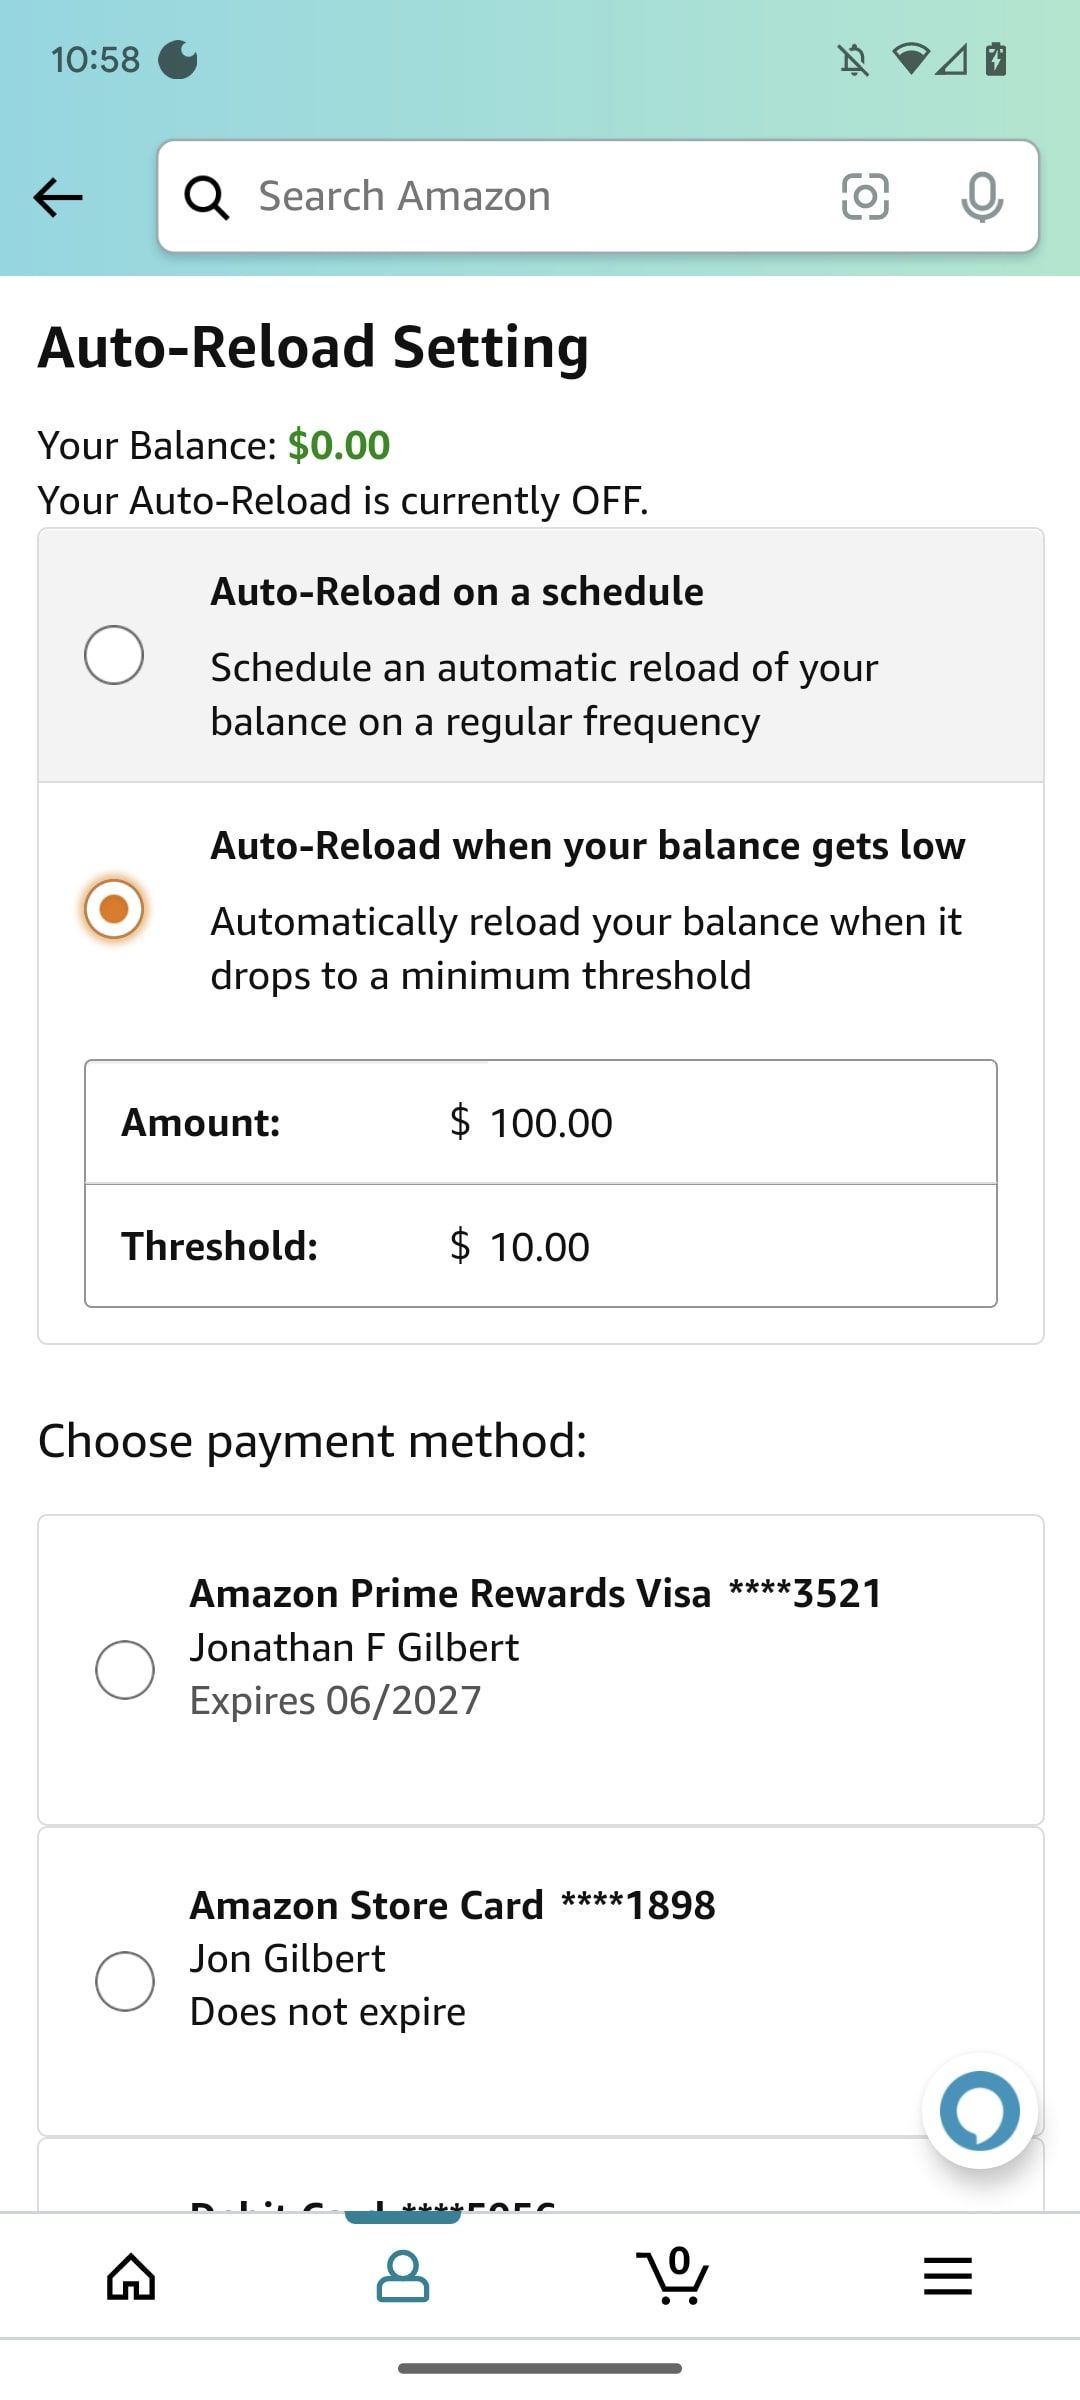 captura de tela do Amazon Shopping do limite de recarga automática sendo definido